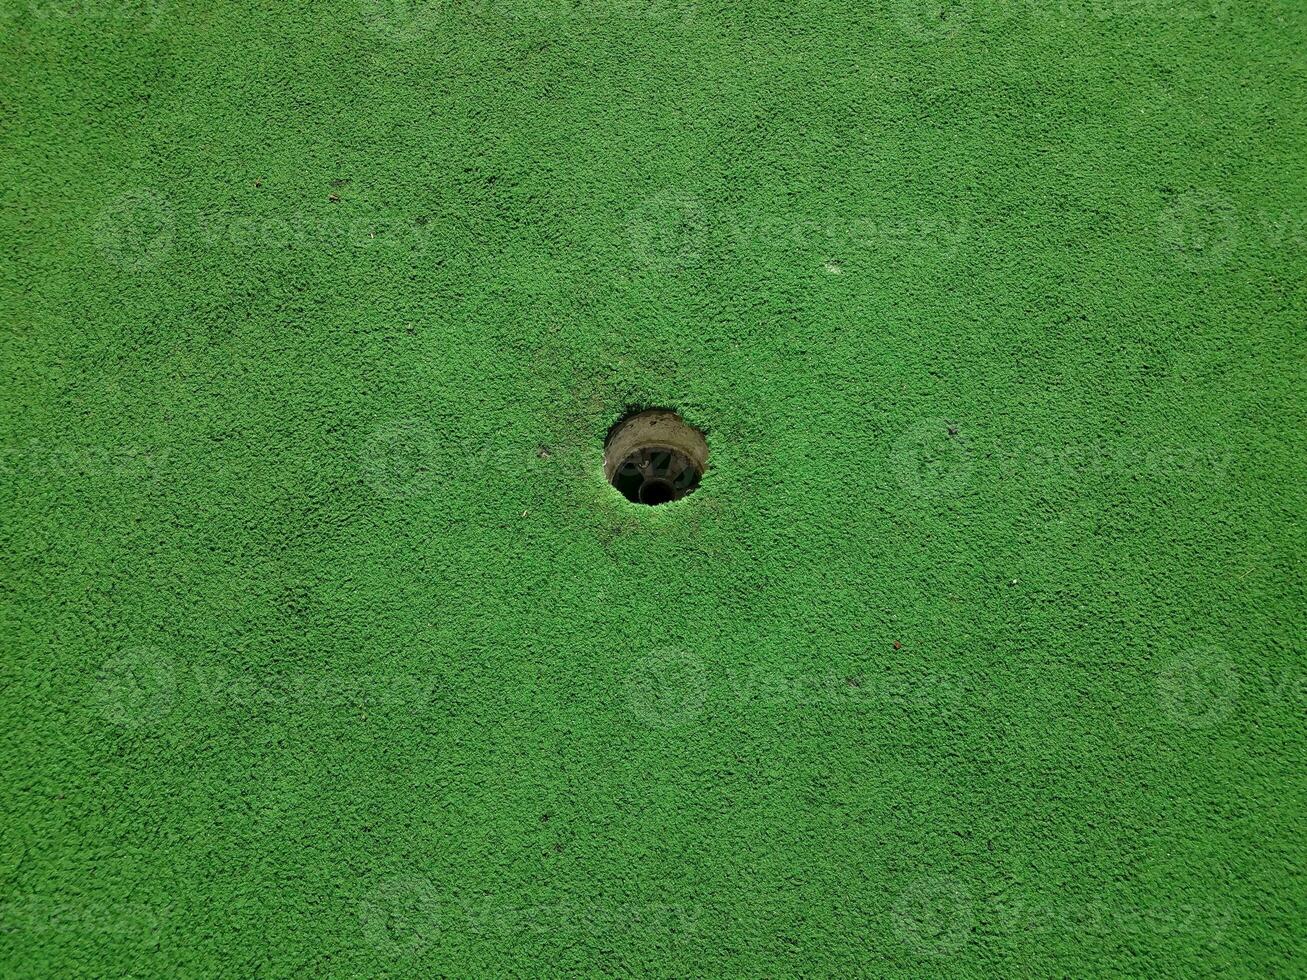 trou sur un parcours de golf miniature avec gazon artificiel vert photo